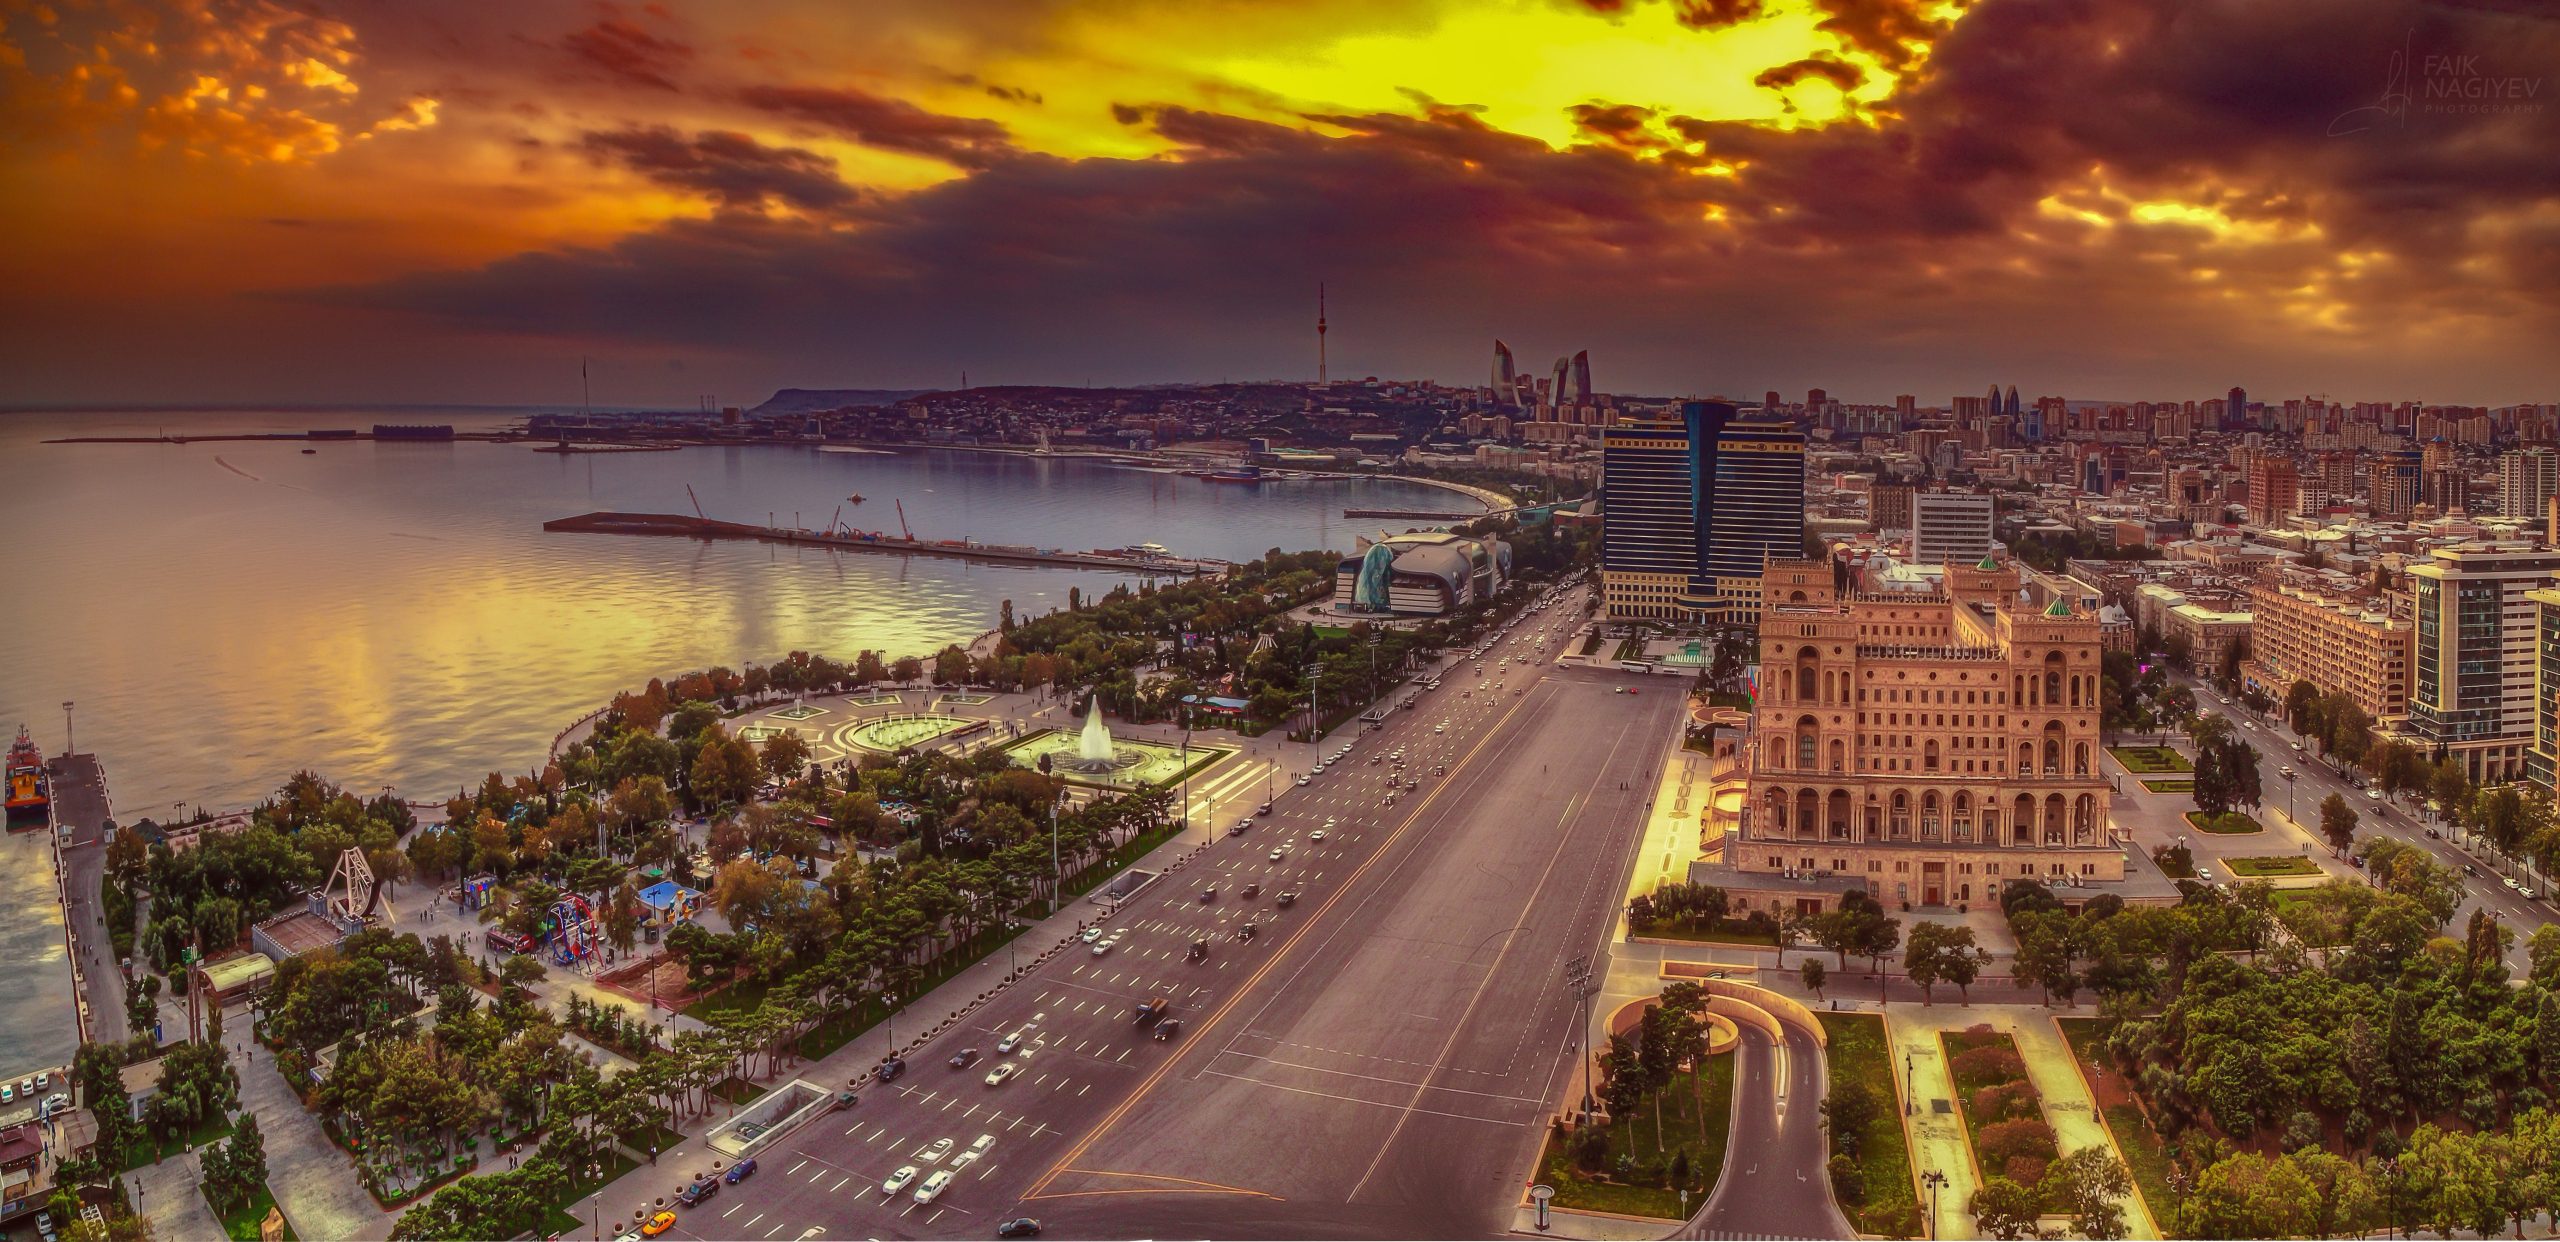 Baku - Azerbaijan